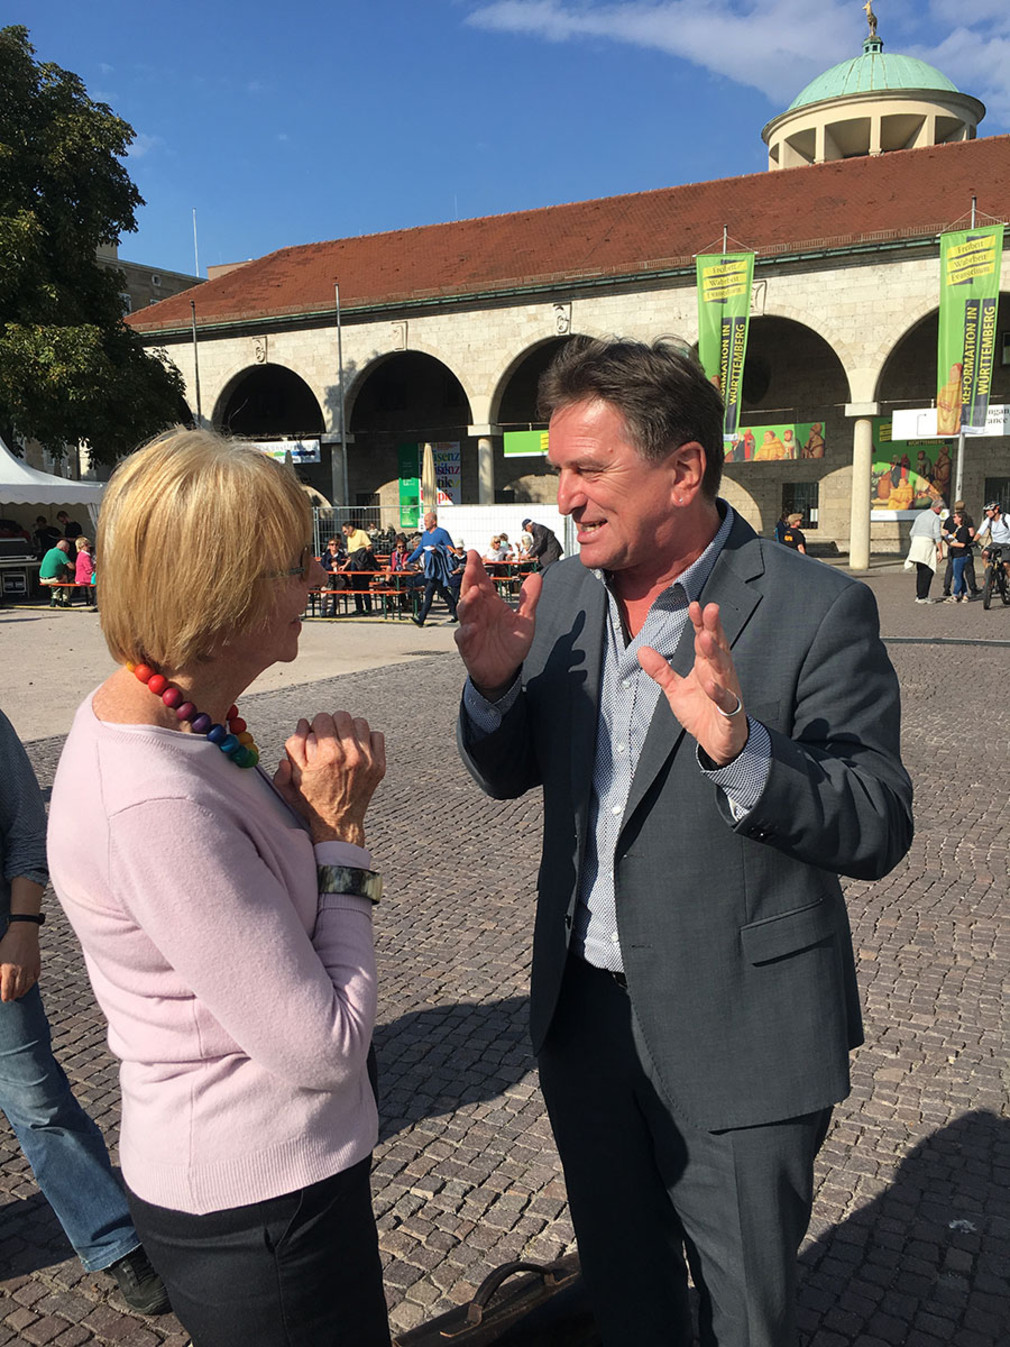 Minister Manne Lucha im Gespräch mit einer Frau auf dem Stuttgarter Schlossplatz